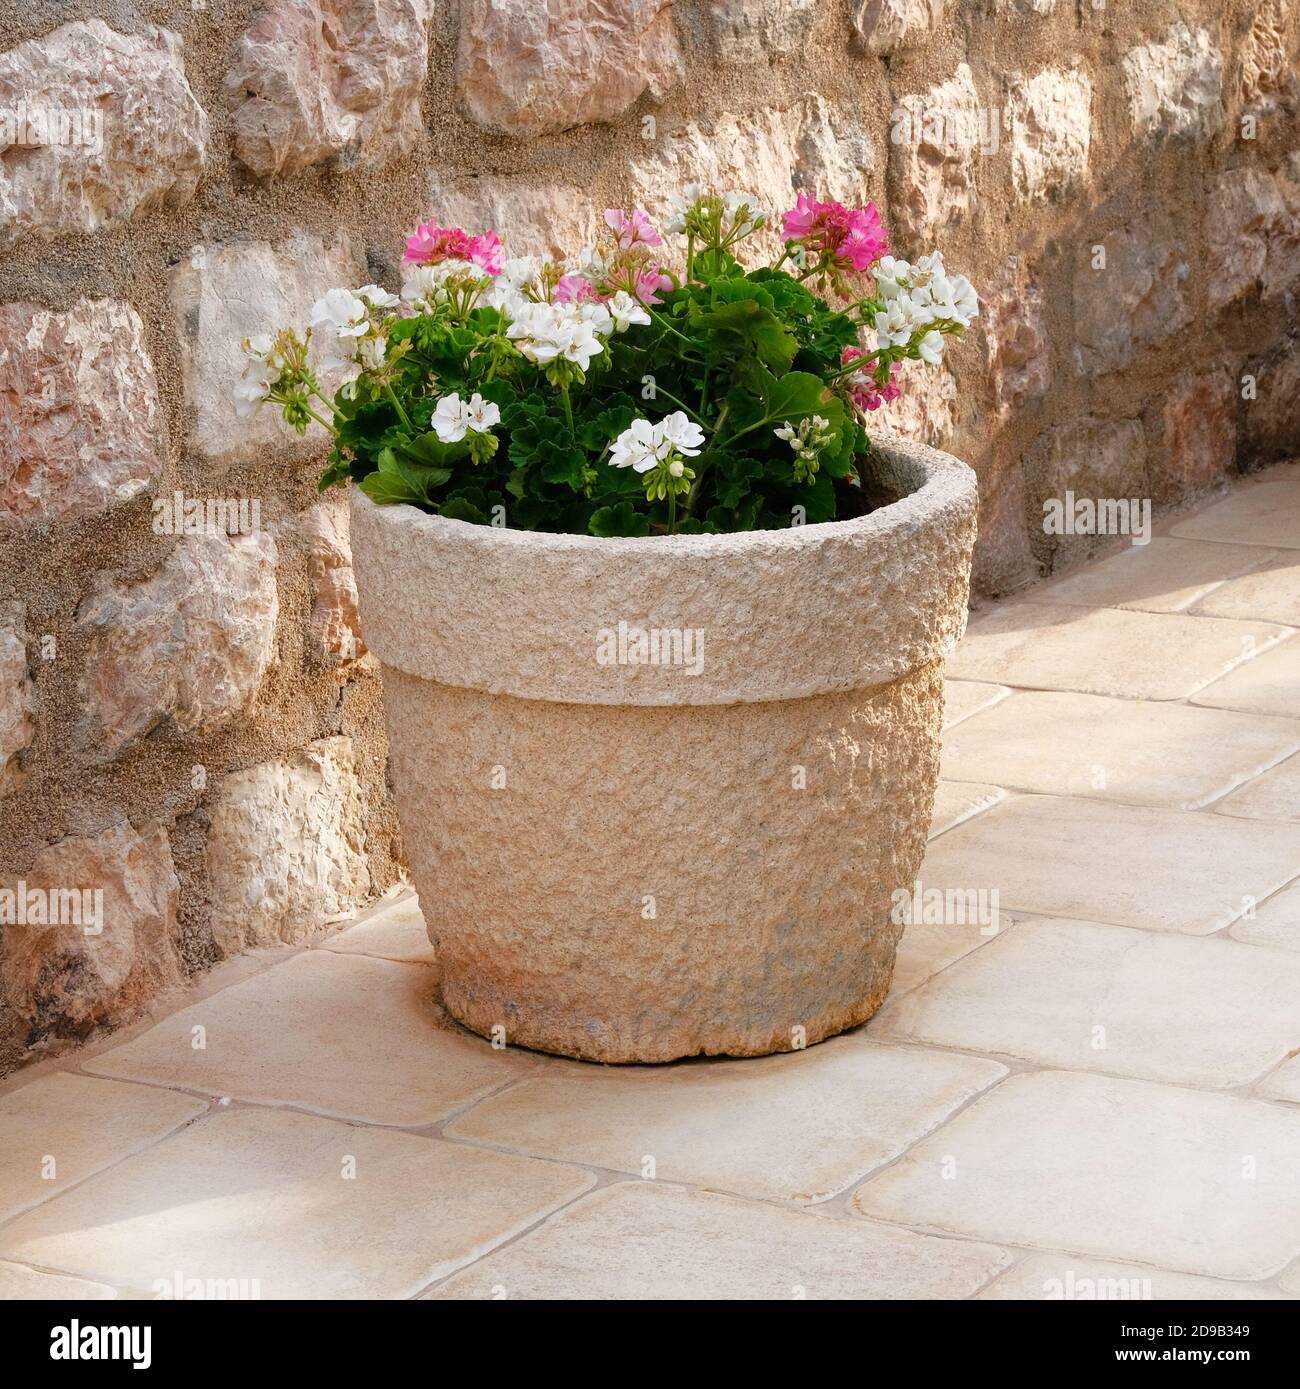 Geranie. Topf mit Büschen blühender Pflanzen. Landschaftsdesign. Büsche mit rosa und weißen Blüten in hellem Keramik Blumentopf. Stockfoto